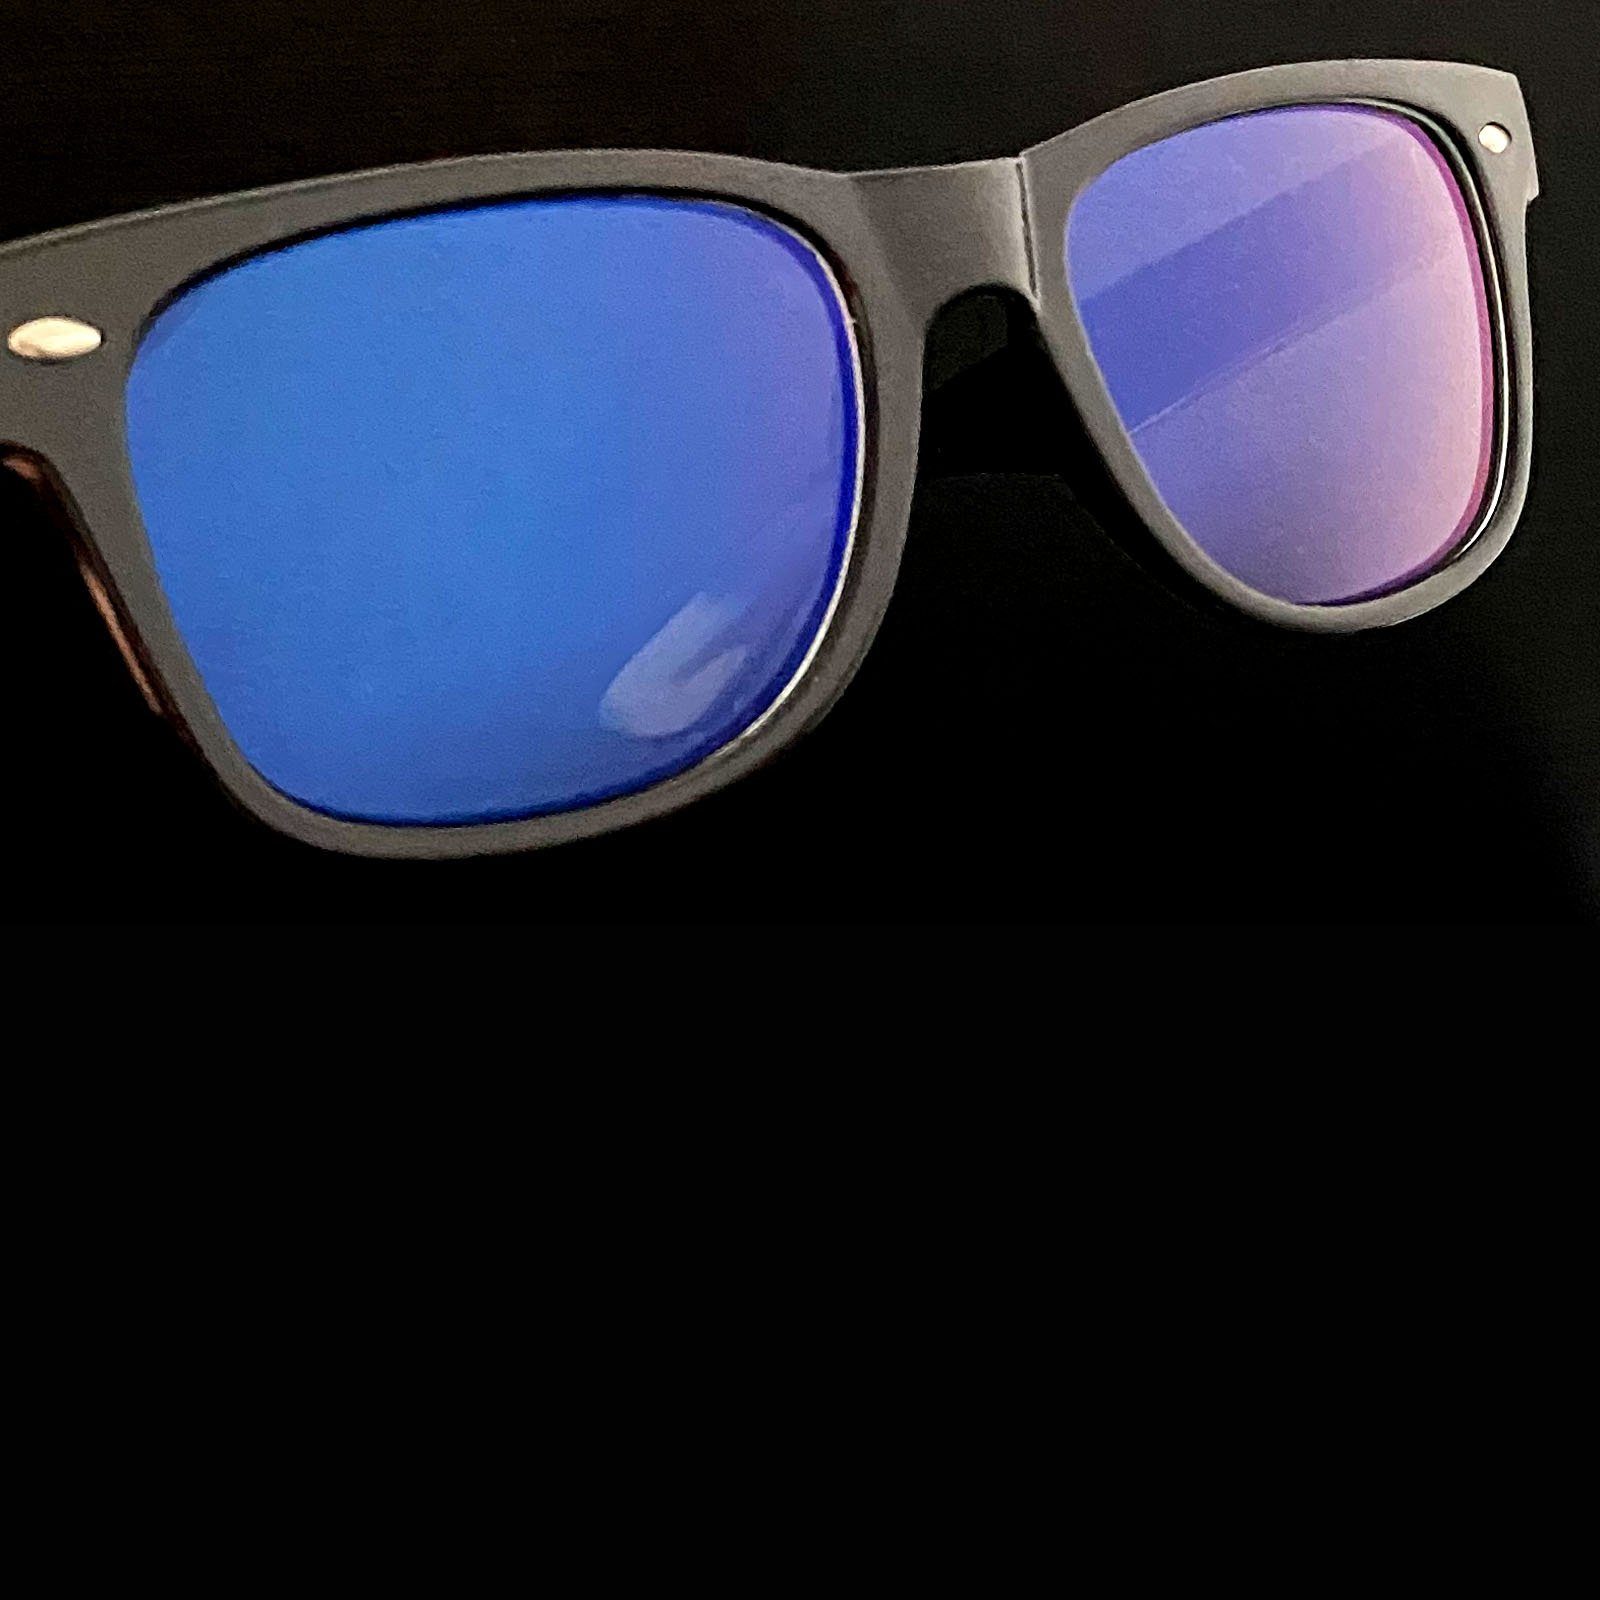 HAC24 Brille Herren Blaulichtfilter Blaufilterbrille Bürobrille Bildschirmbrille Bildschirm Damen 4x Monitor Ohne PC Arbeitsplatzbrille, Blaufilter für Brille Gamingbrille Stärke